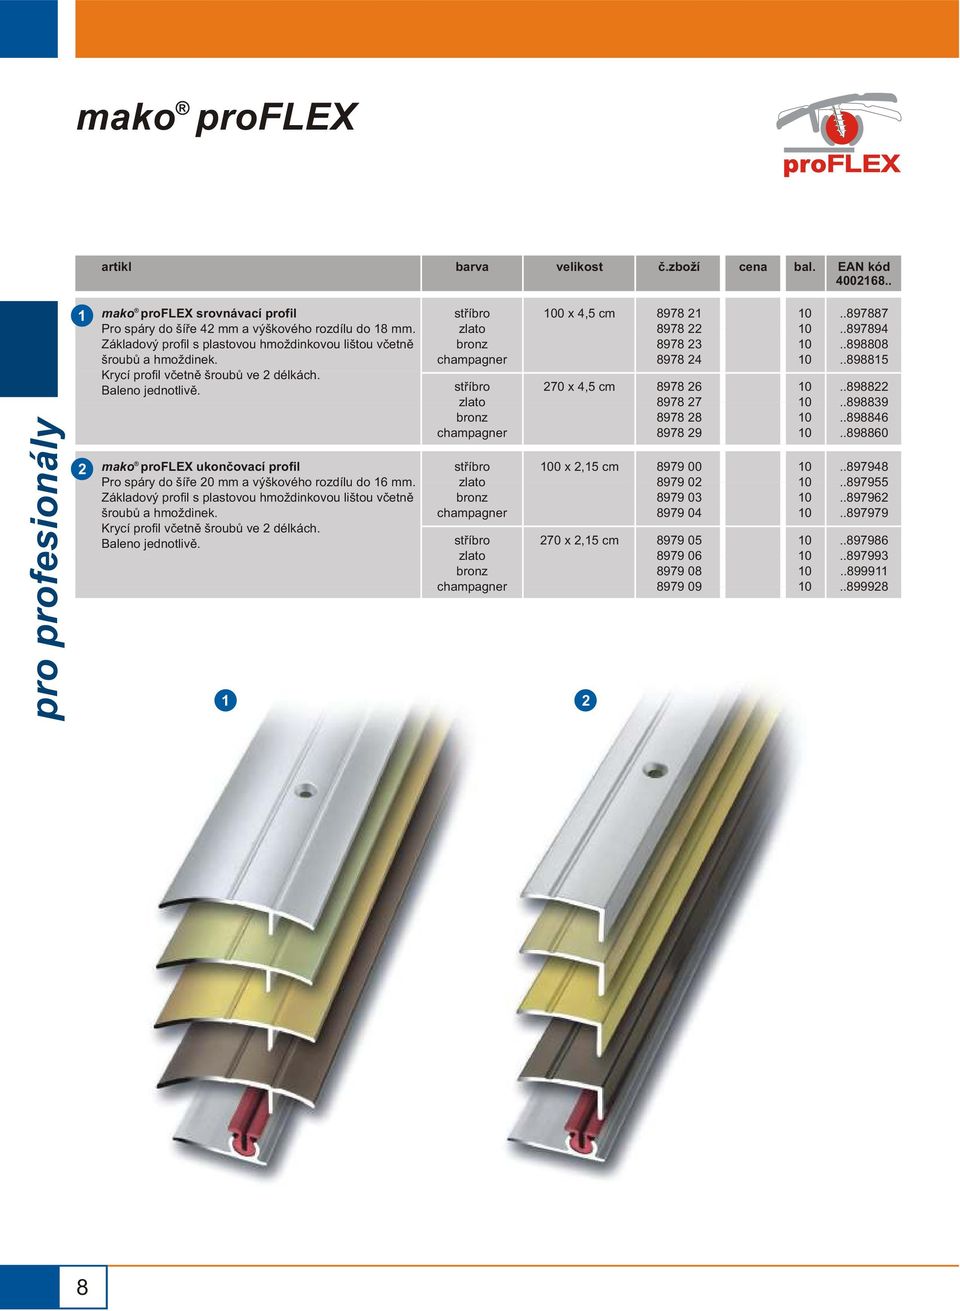 mako proflex ukonèovací profil Pro spáry do šíøe 0 mm a výškového rozdílu do 6 mm.